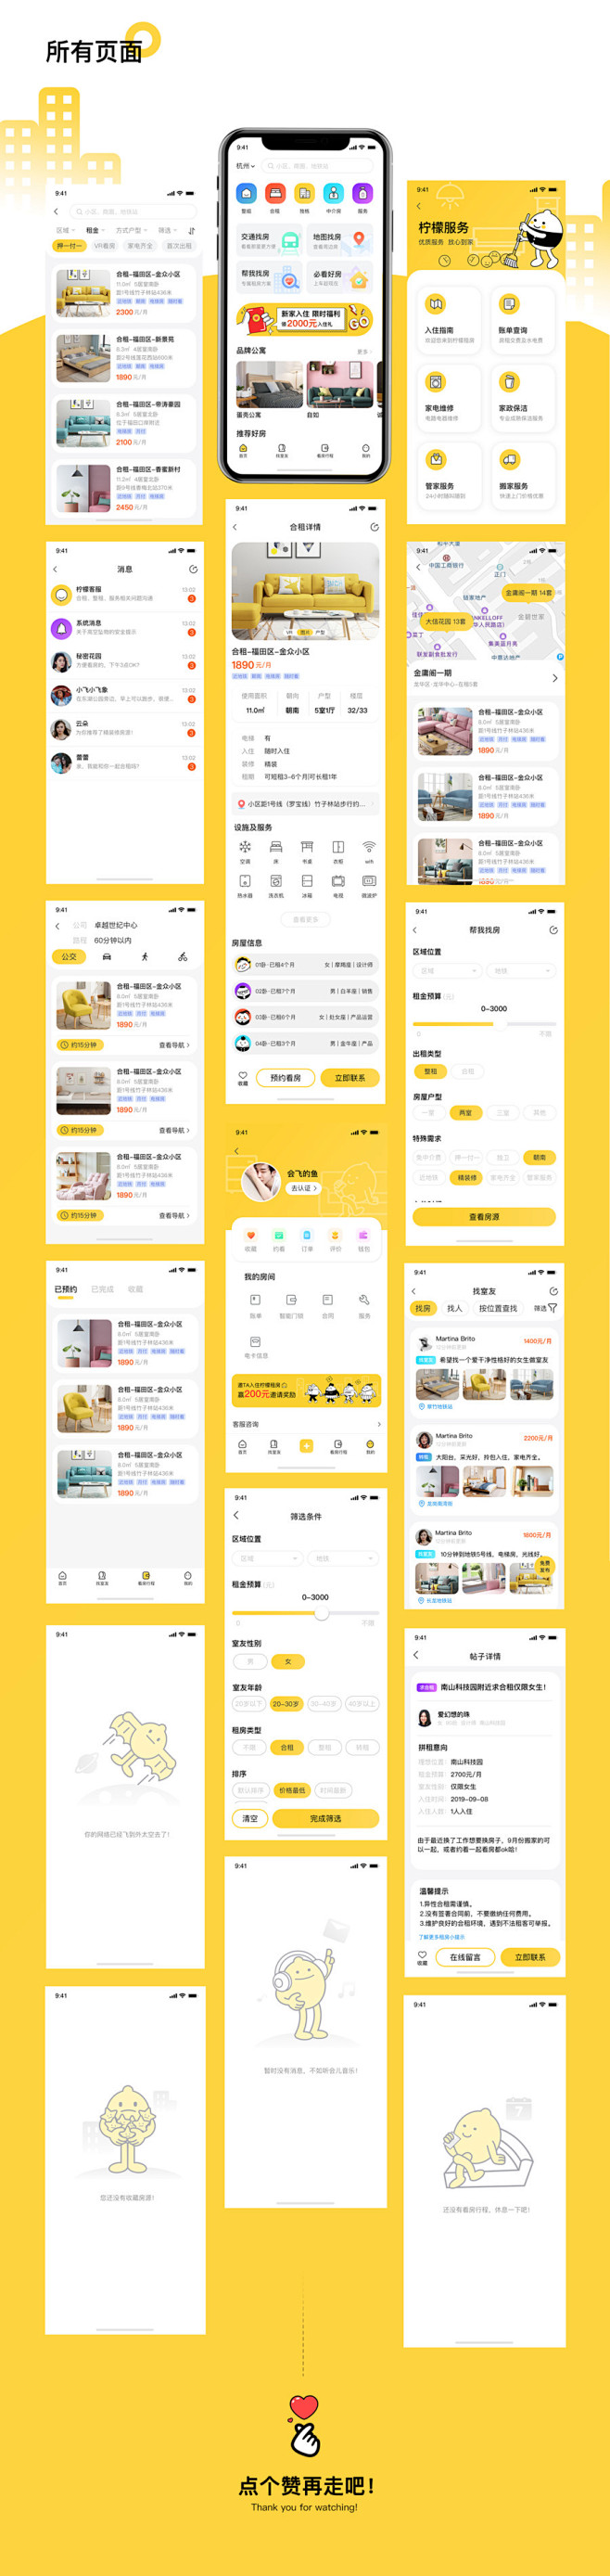 柠檬租房APP-UI中国用户体验设计平台